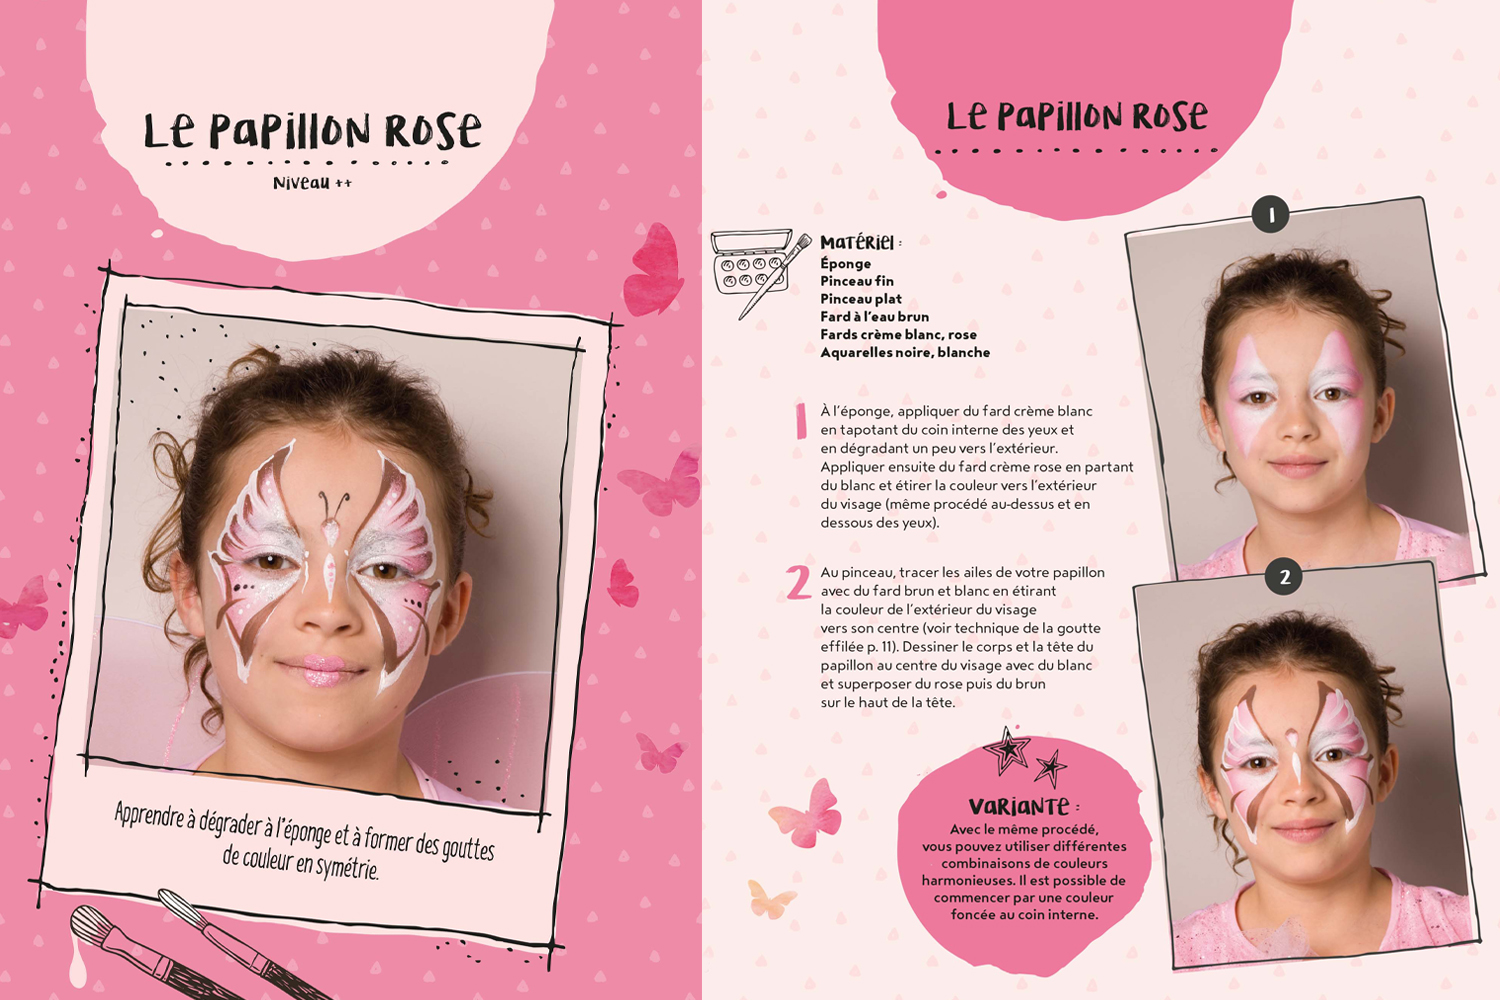 Maquillage enfant Fleur pour Carnaval - Idées conseils et tuto